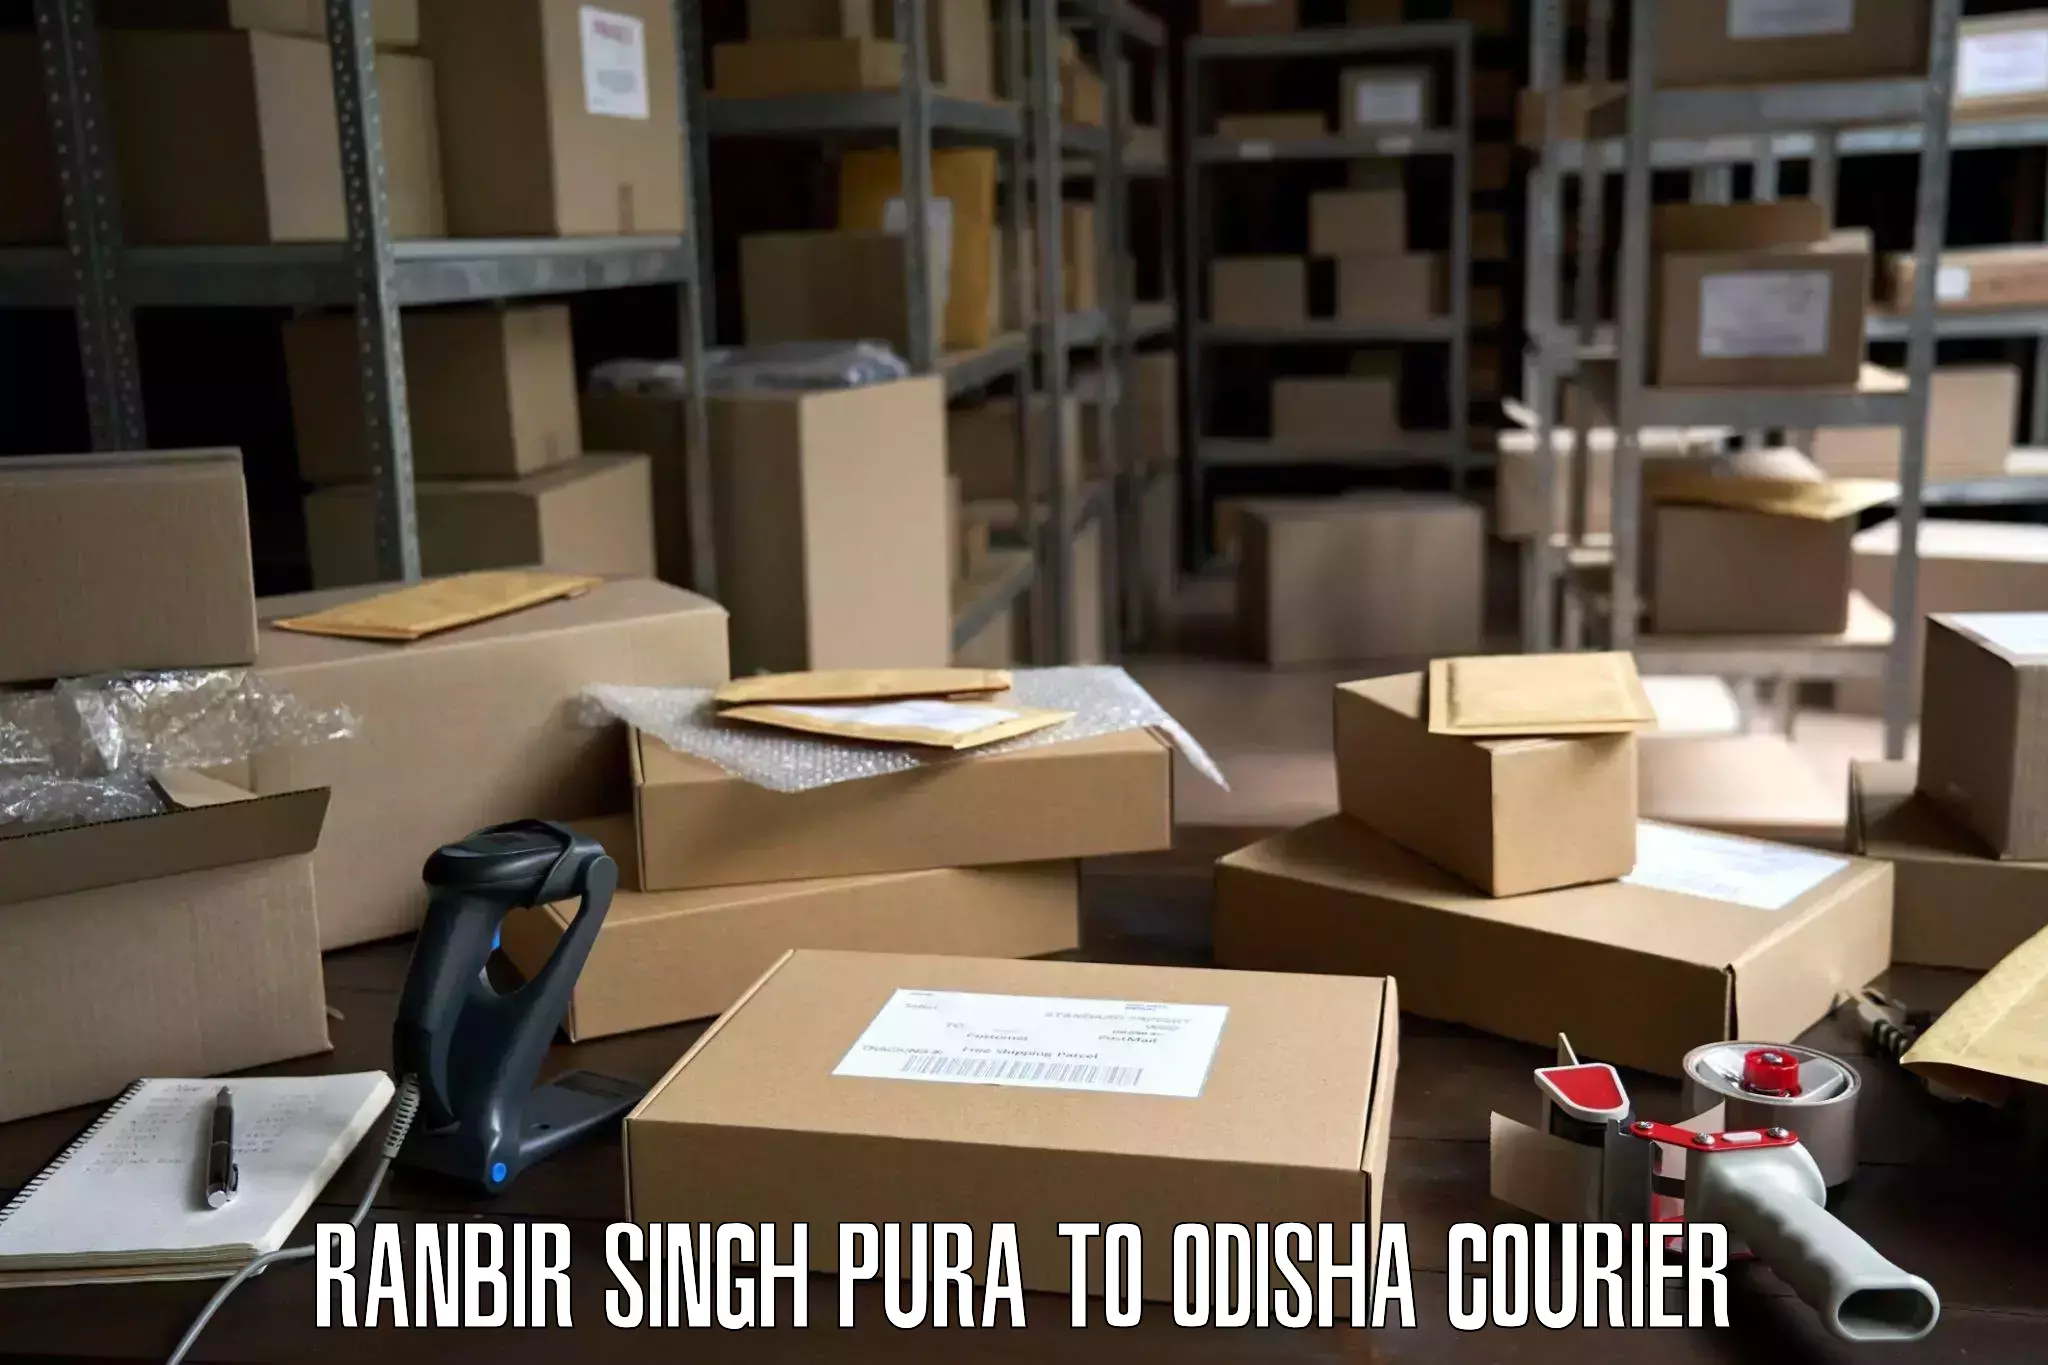 Furniture transport service Ranbir Singh Pura to Jashipur